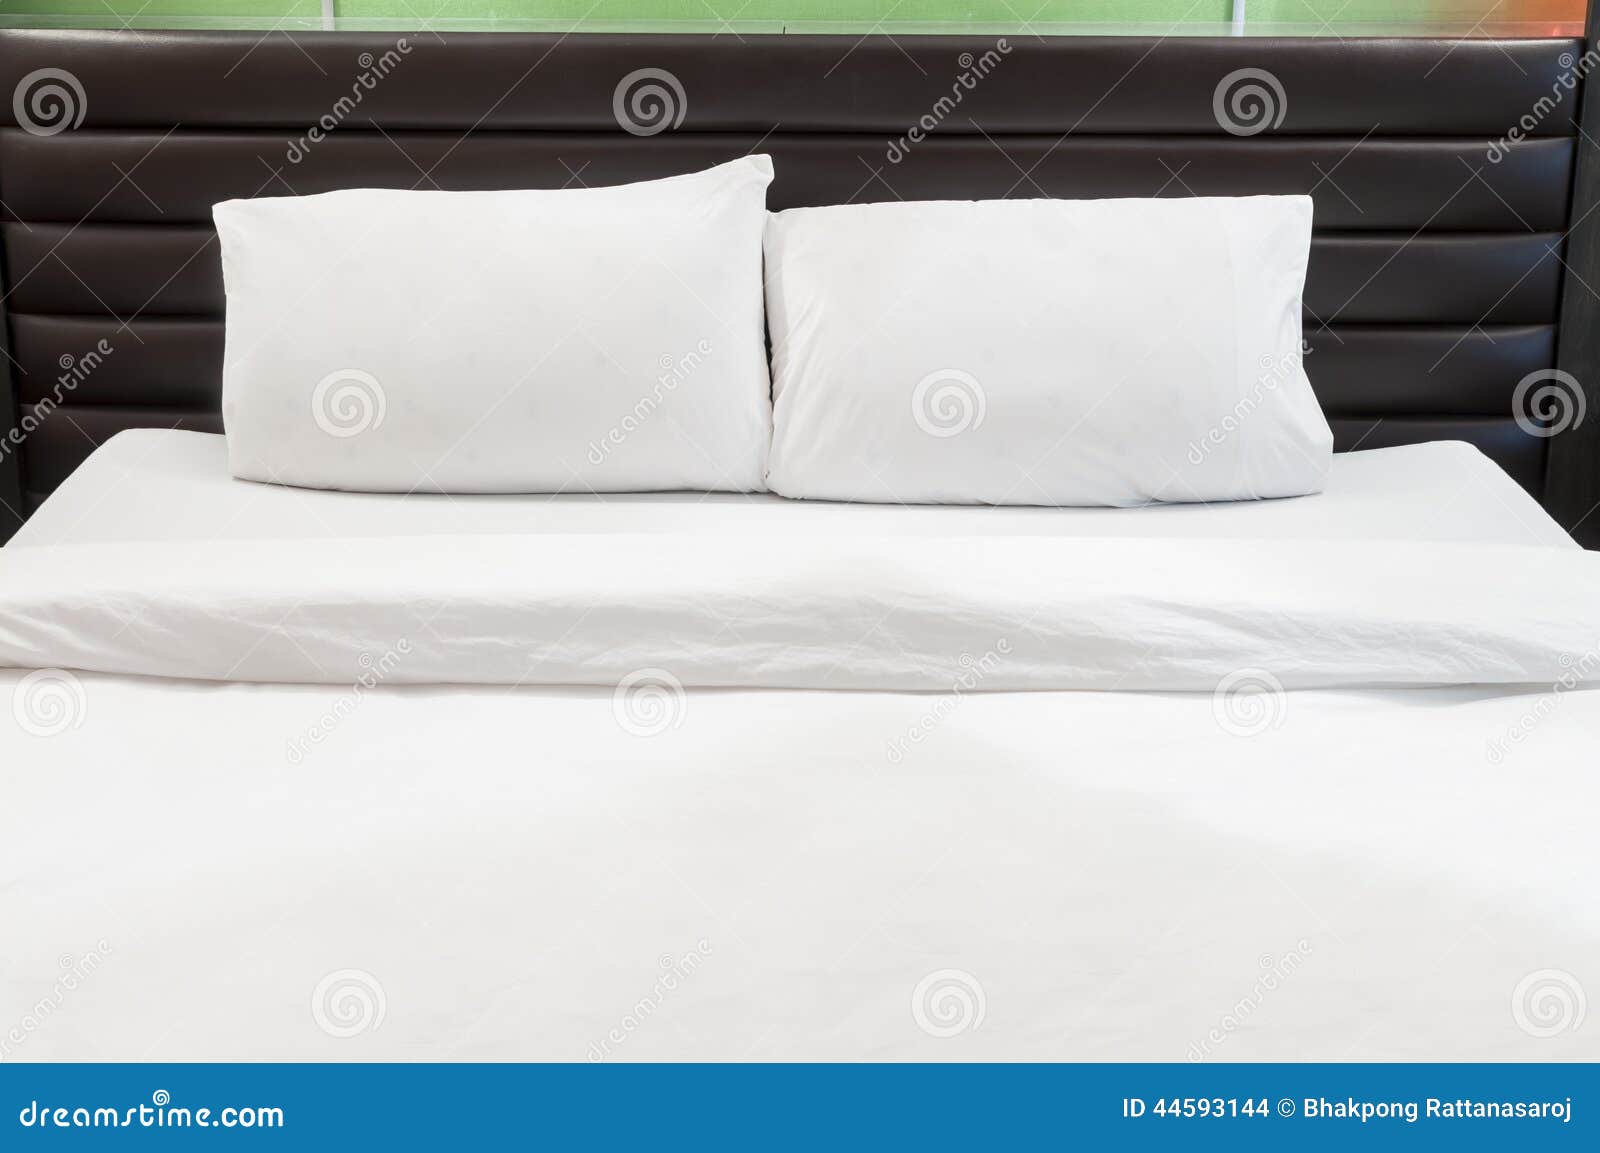 científico Poner a prueba o probar lealtad Dos almohadas en cama foto de archivo. Imagen de apacible - 44593144